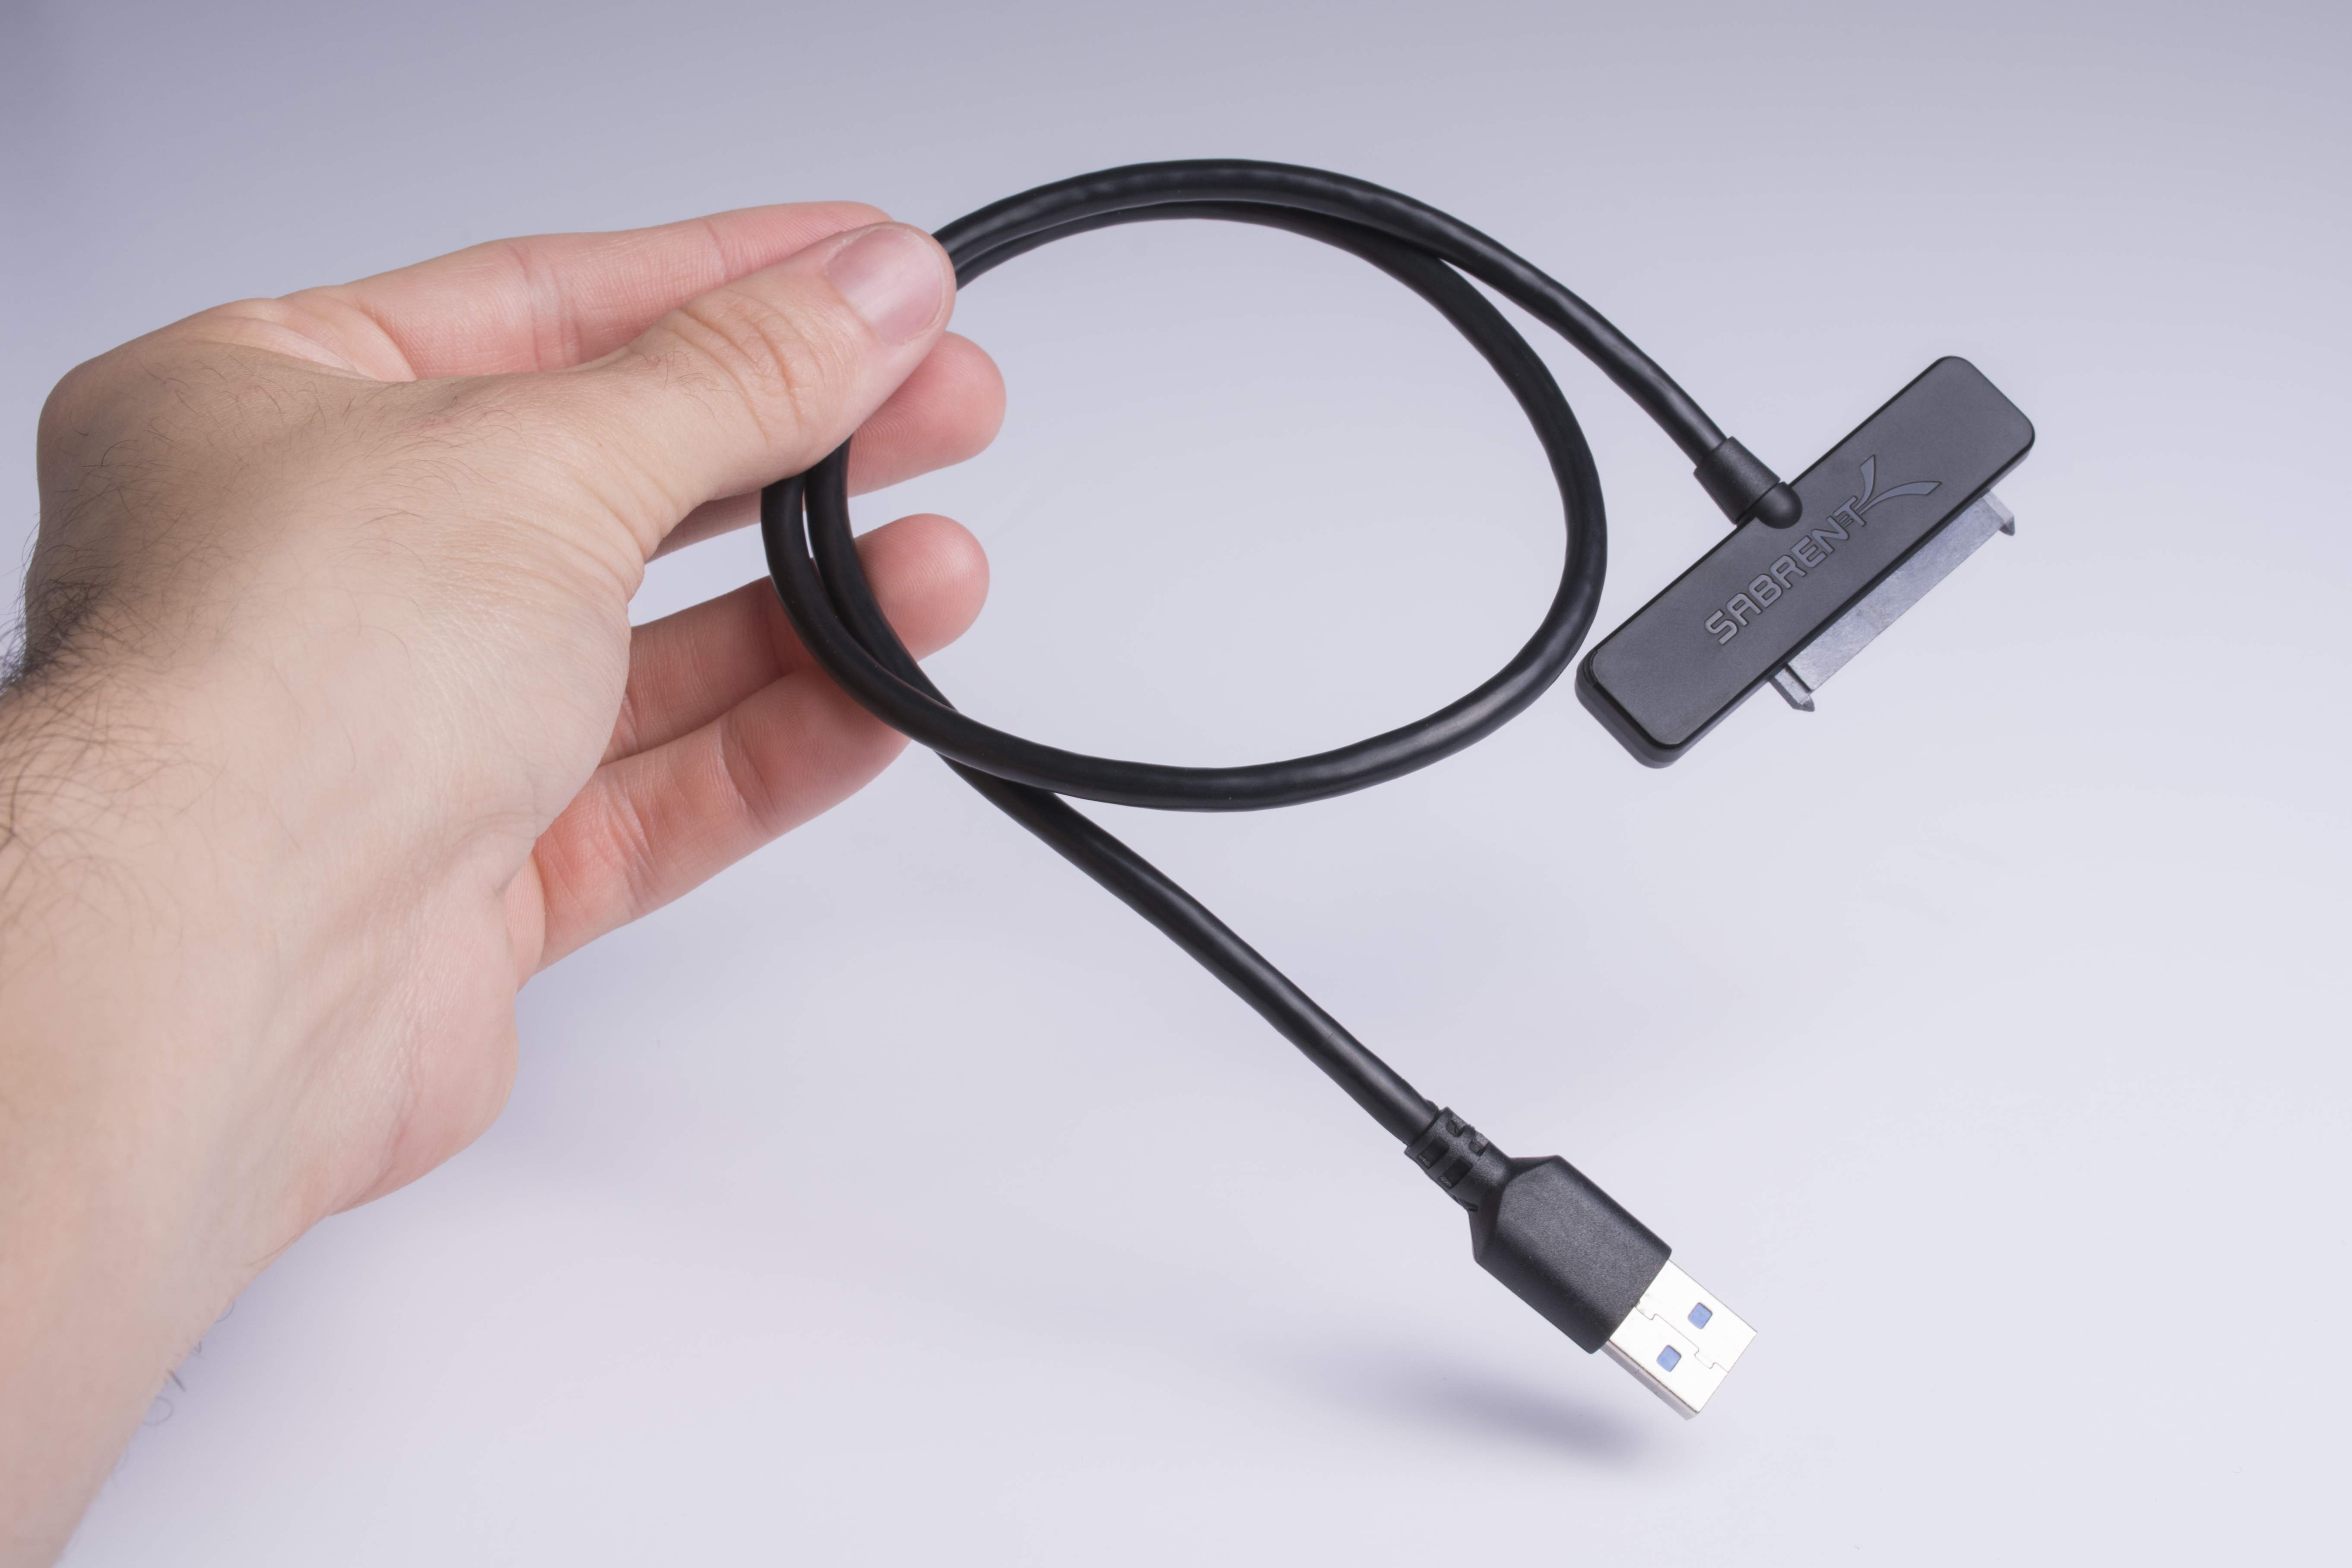 Sabrent USB 3.0 to SATA Hard Drive Adapter